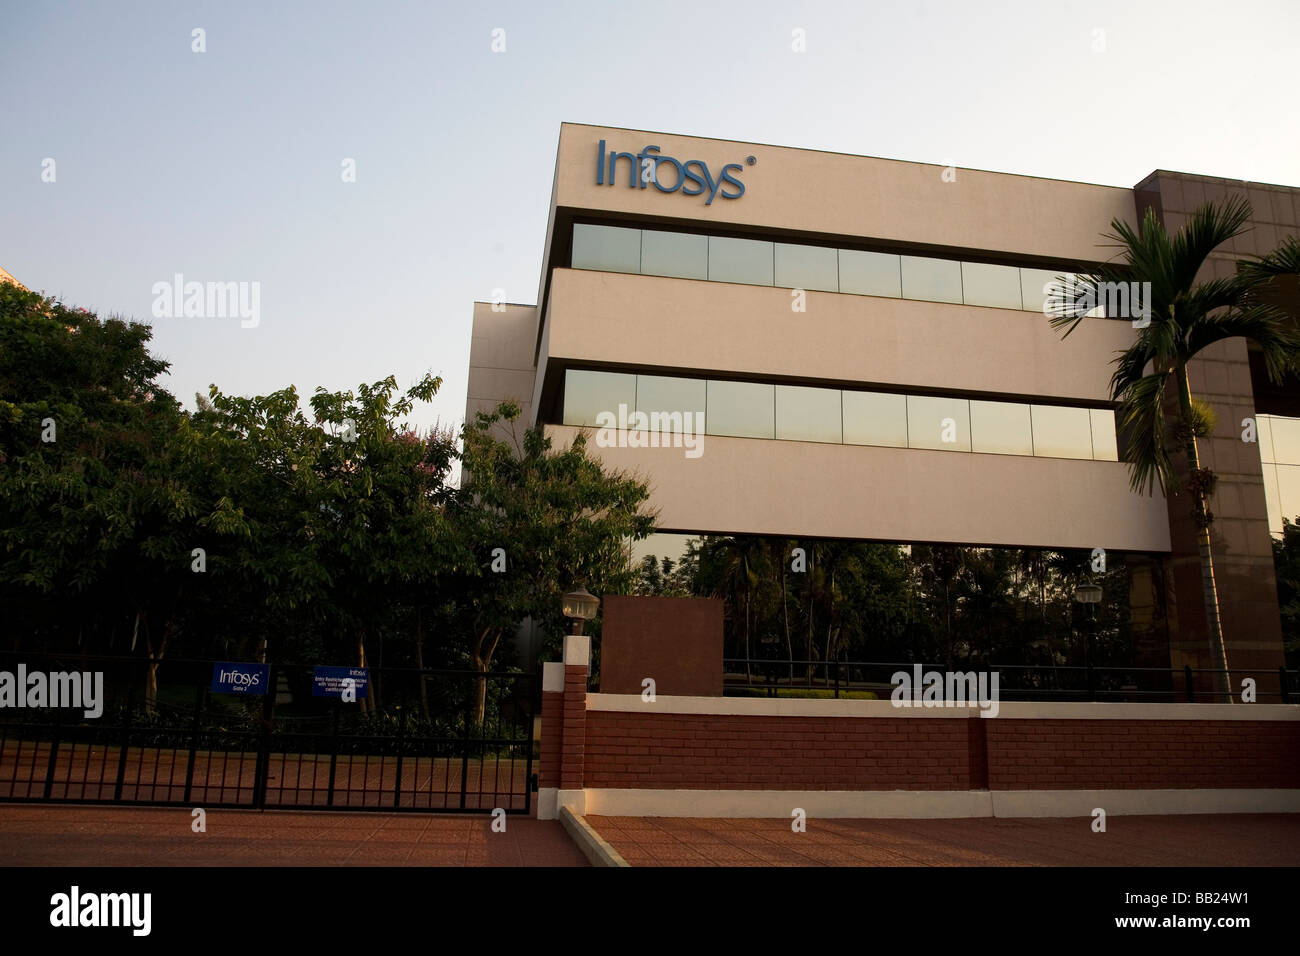 Un bureau d'Infosys, l'un des immeubles de bureaux modernes au sein de Electronics City, une banlieue de Bangalore, en Inde. Banque D'Images